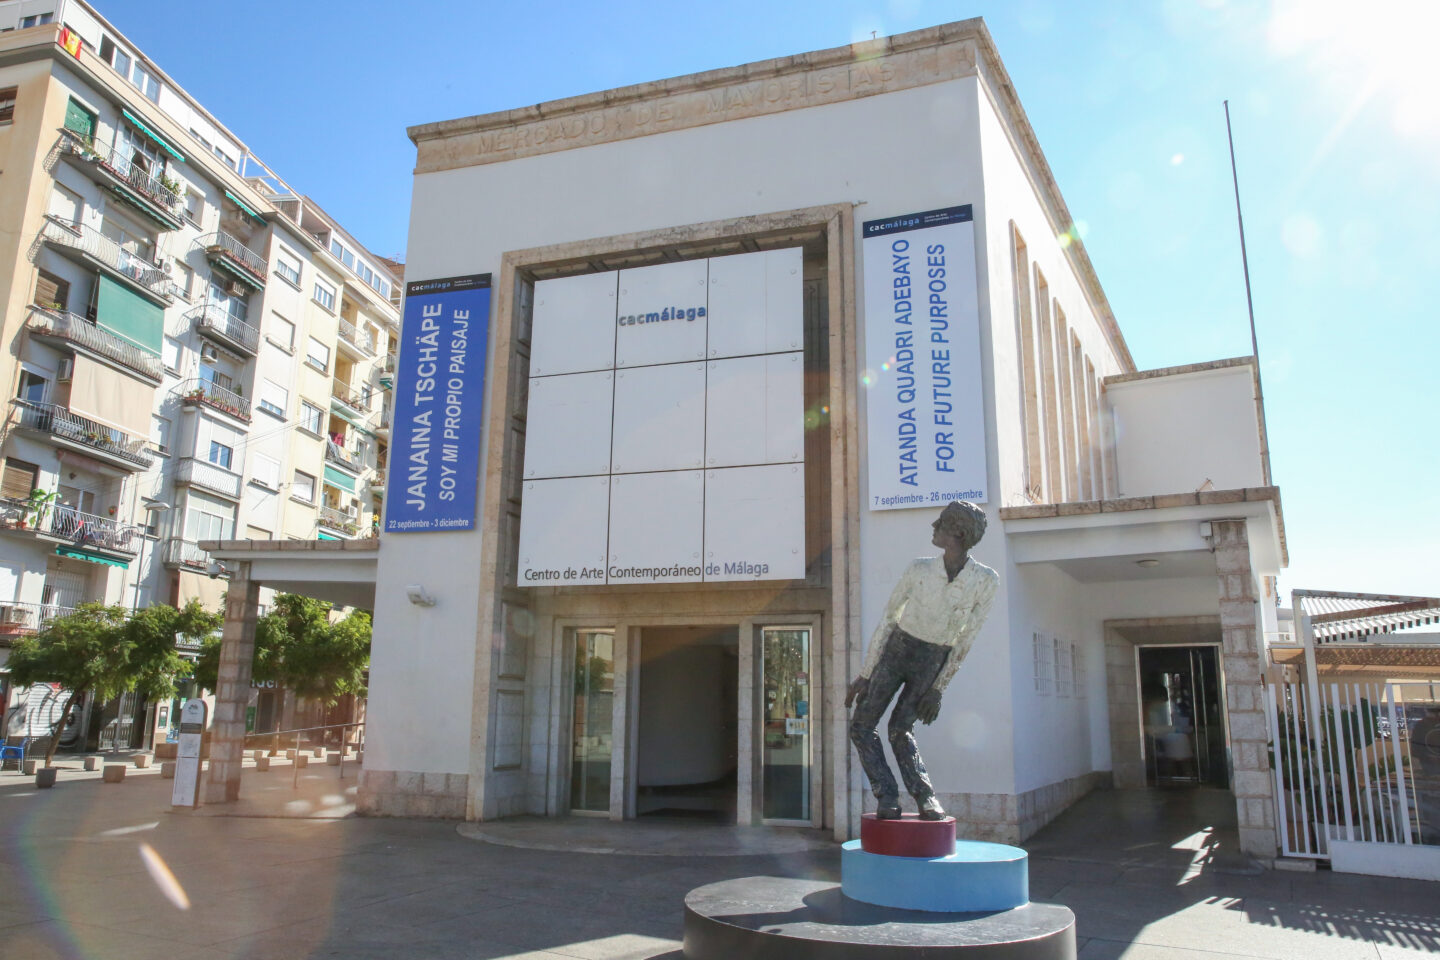 CAC Málaga: Ein zeitgenössisches Juwel abseits des Picasso-Schattens, Skulptur Stephan Balkenhol